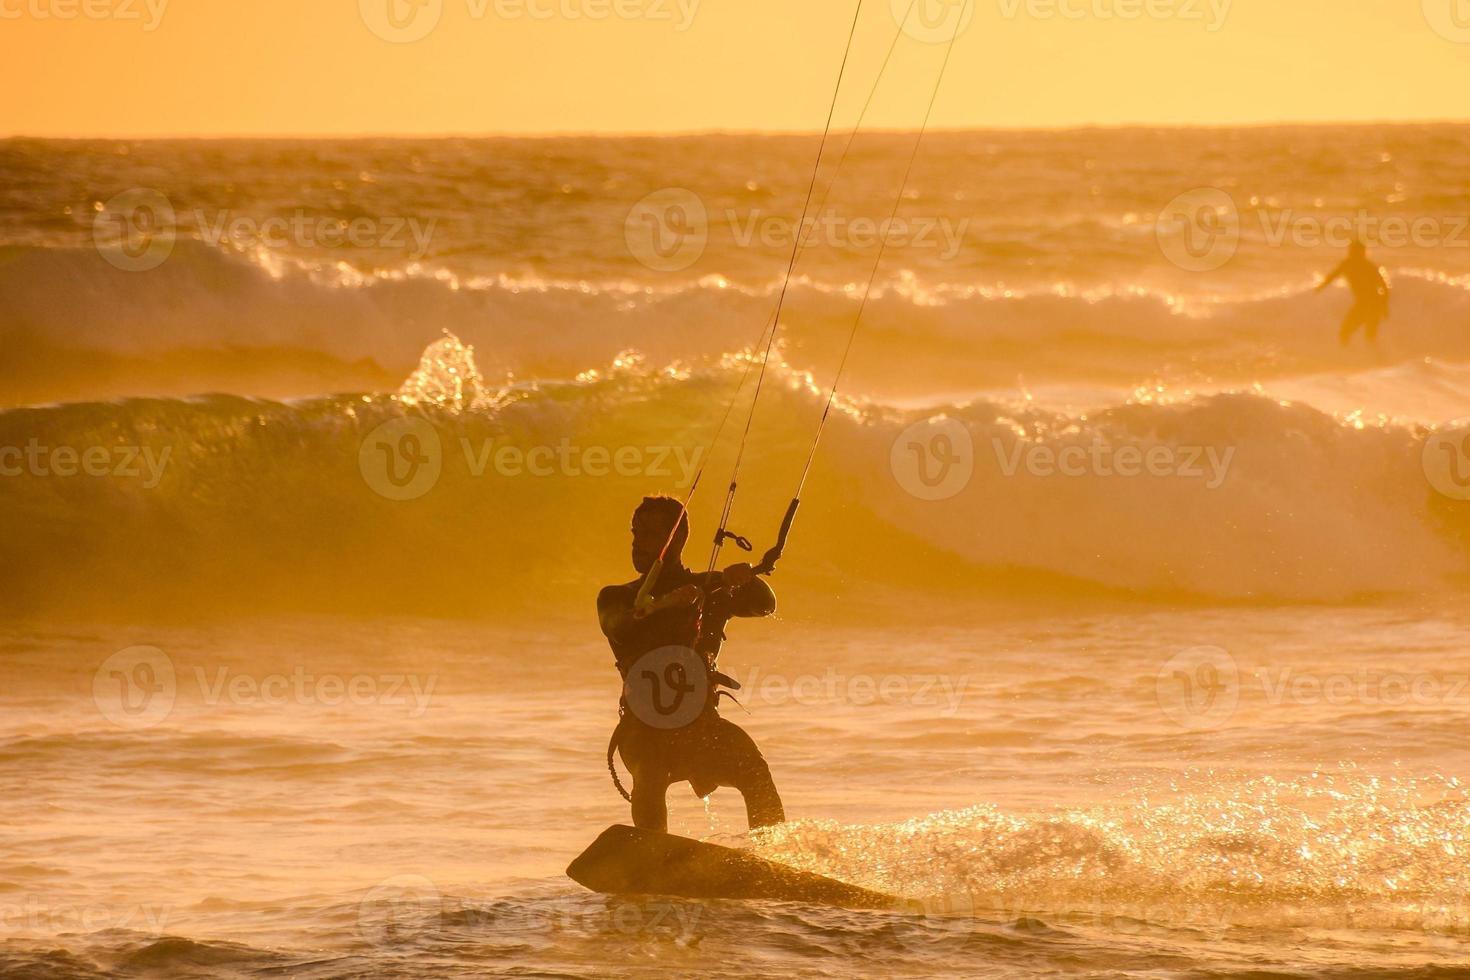 Kitesurfer at sunset photo